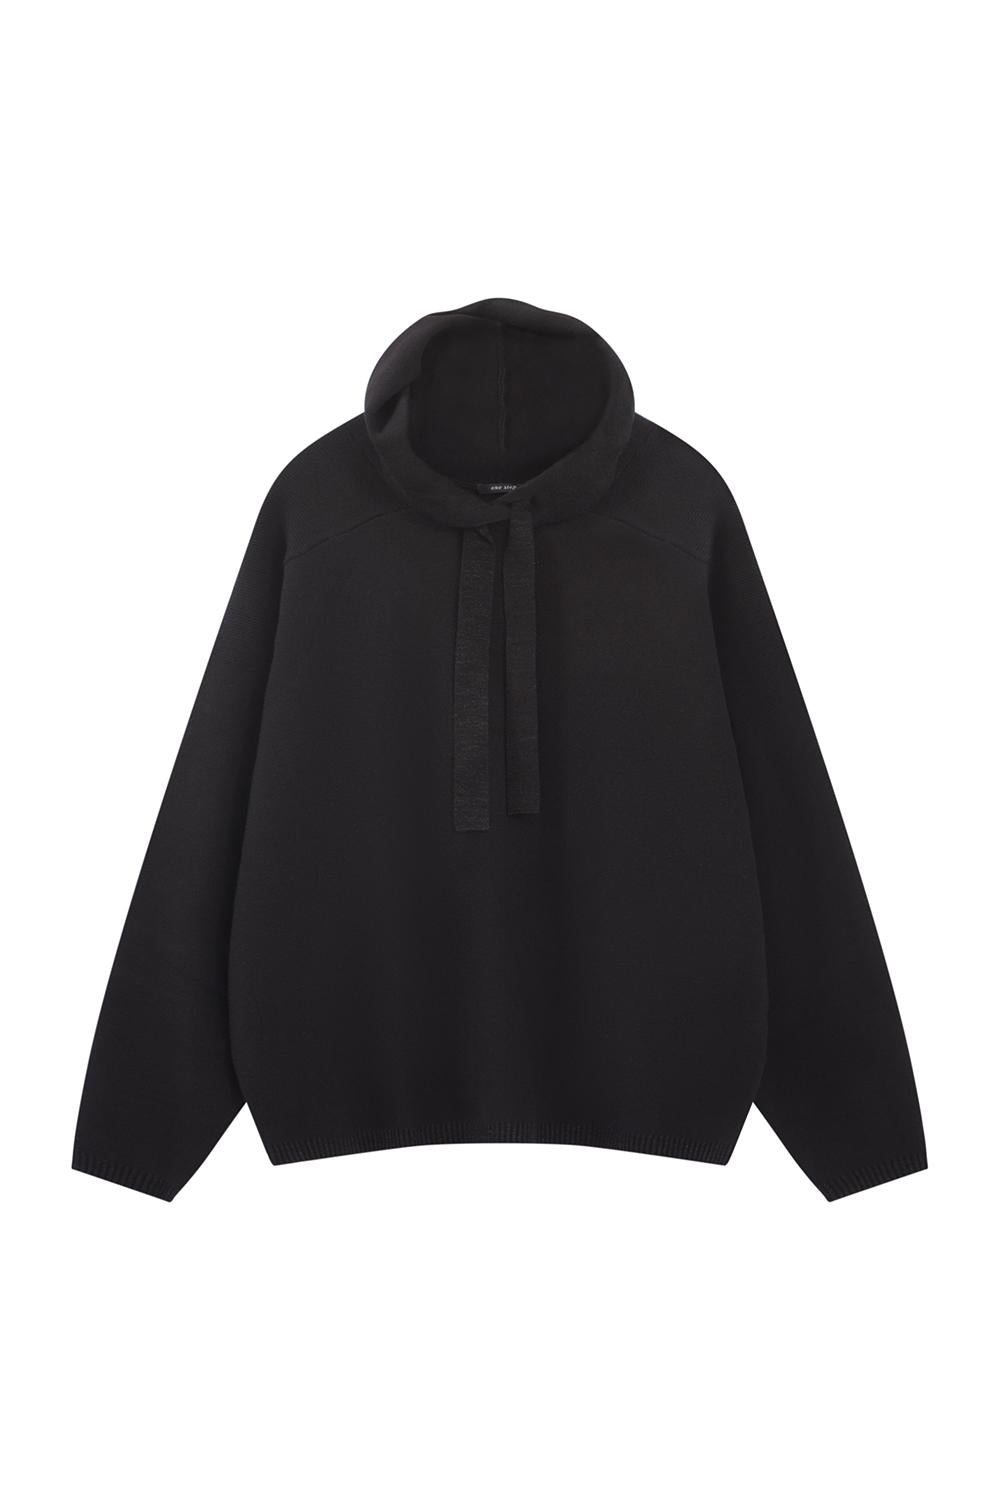 TECK - Pull noir tricot à capuche